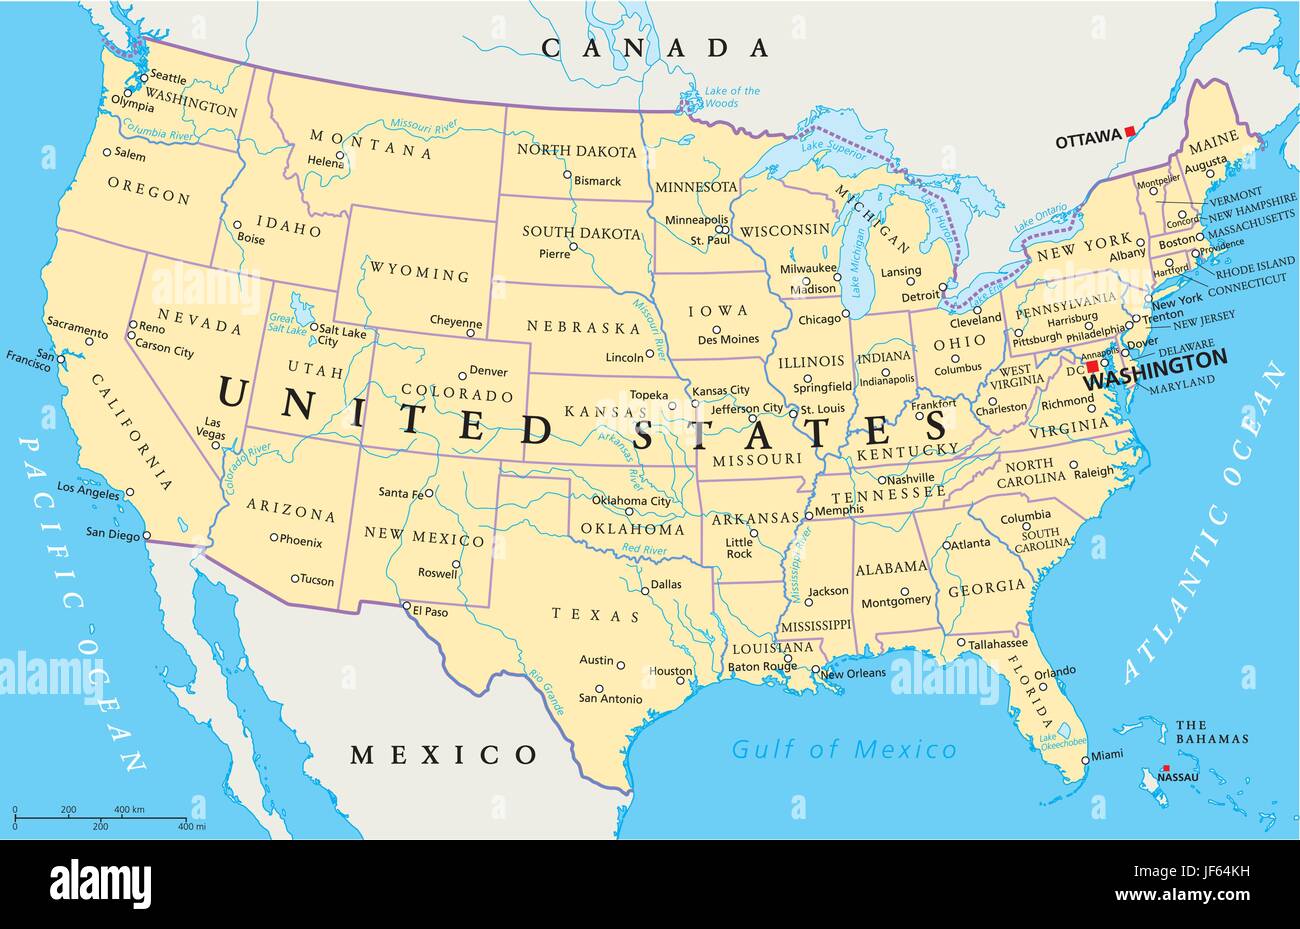 Stati Uniti d'America, America, mappa, Atlas, mappa del mondo, viaggi, Stati Uniti, California, America, Illustrazione Vettoriale